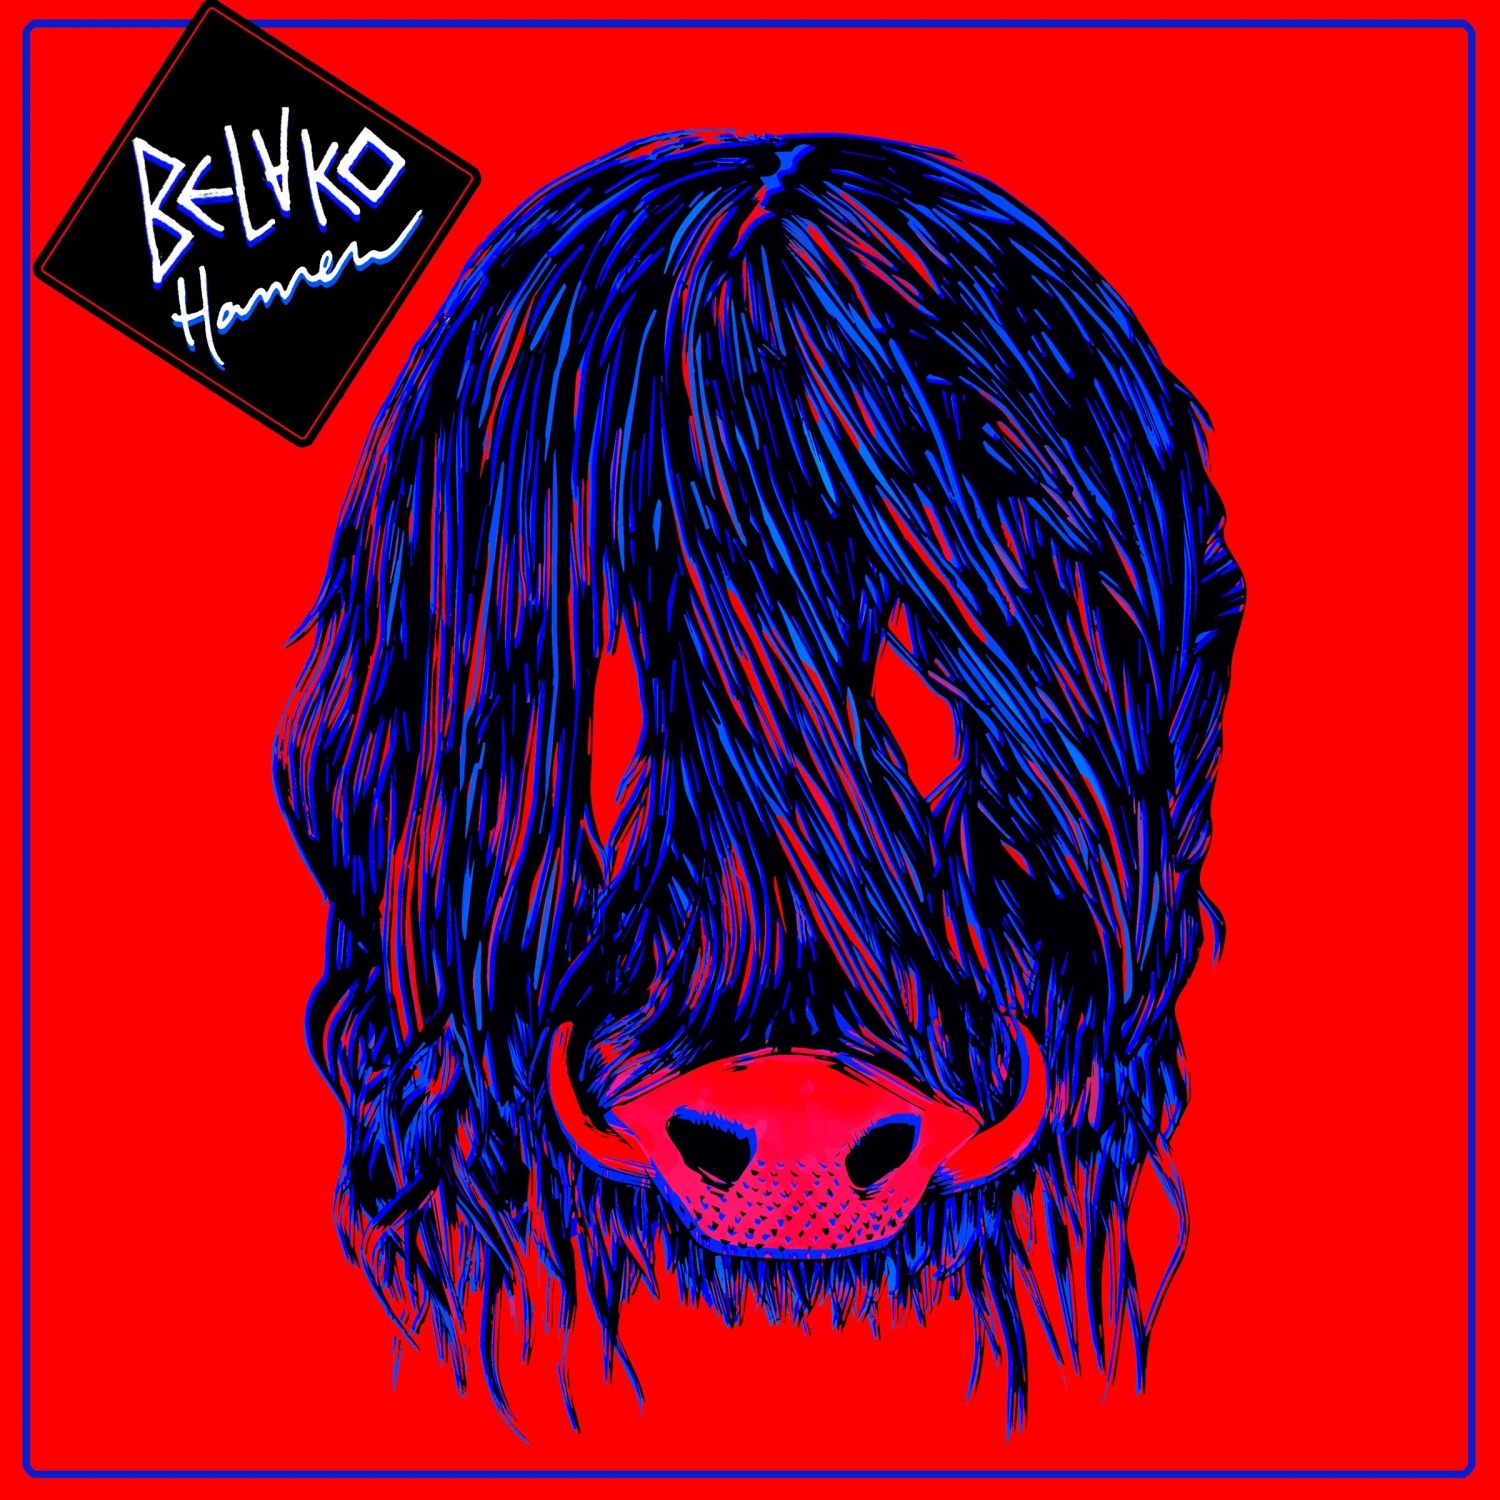 Belako - Hamen vinyl cover